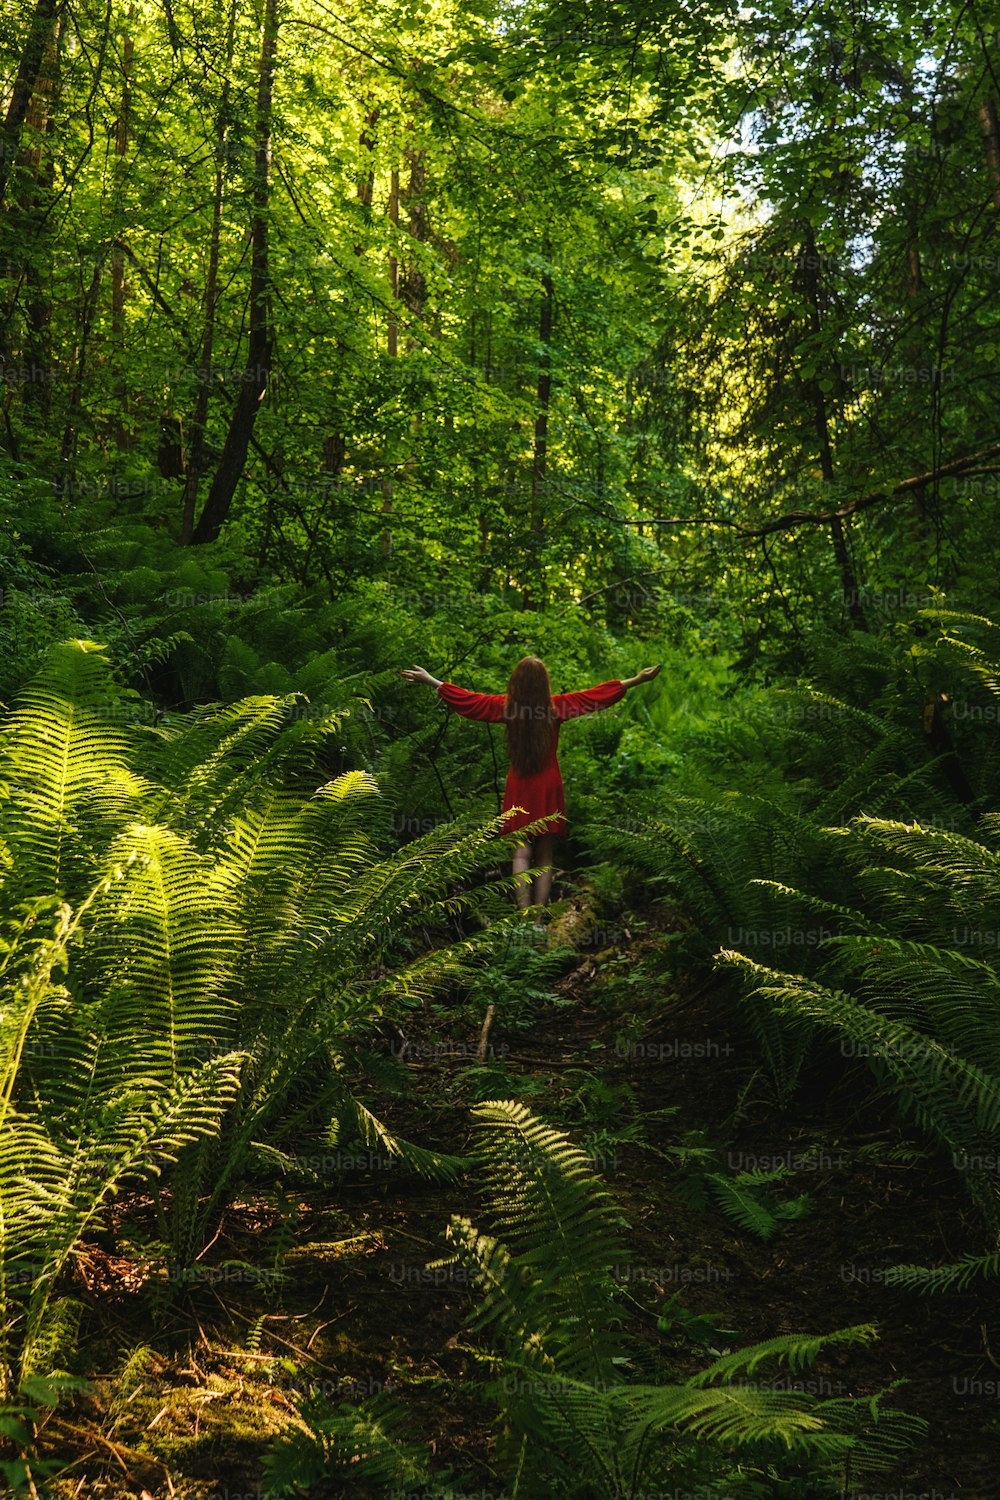 La joven vestida de rojo vista trasera en bosque con helecho. Concepto de naturaleza y vida feliz, aventura. Hermosa luz.